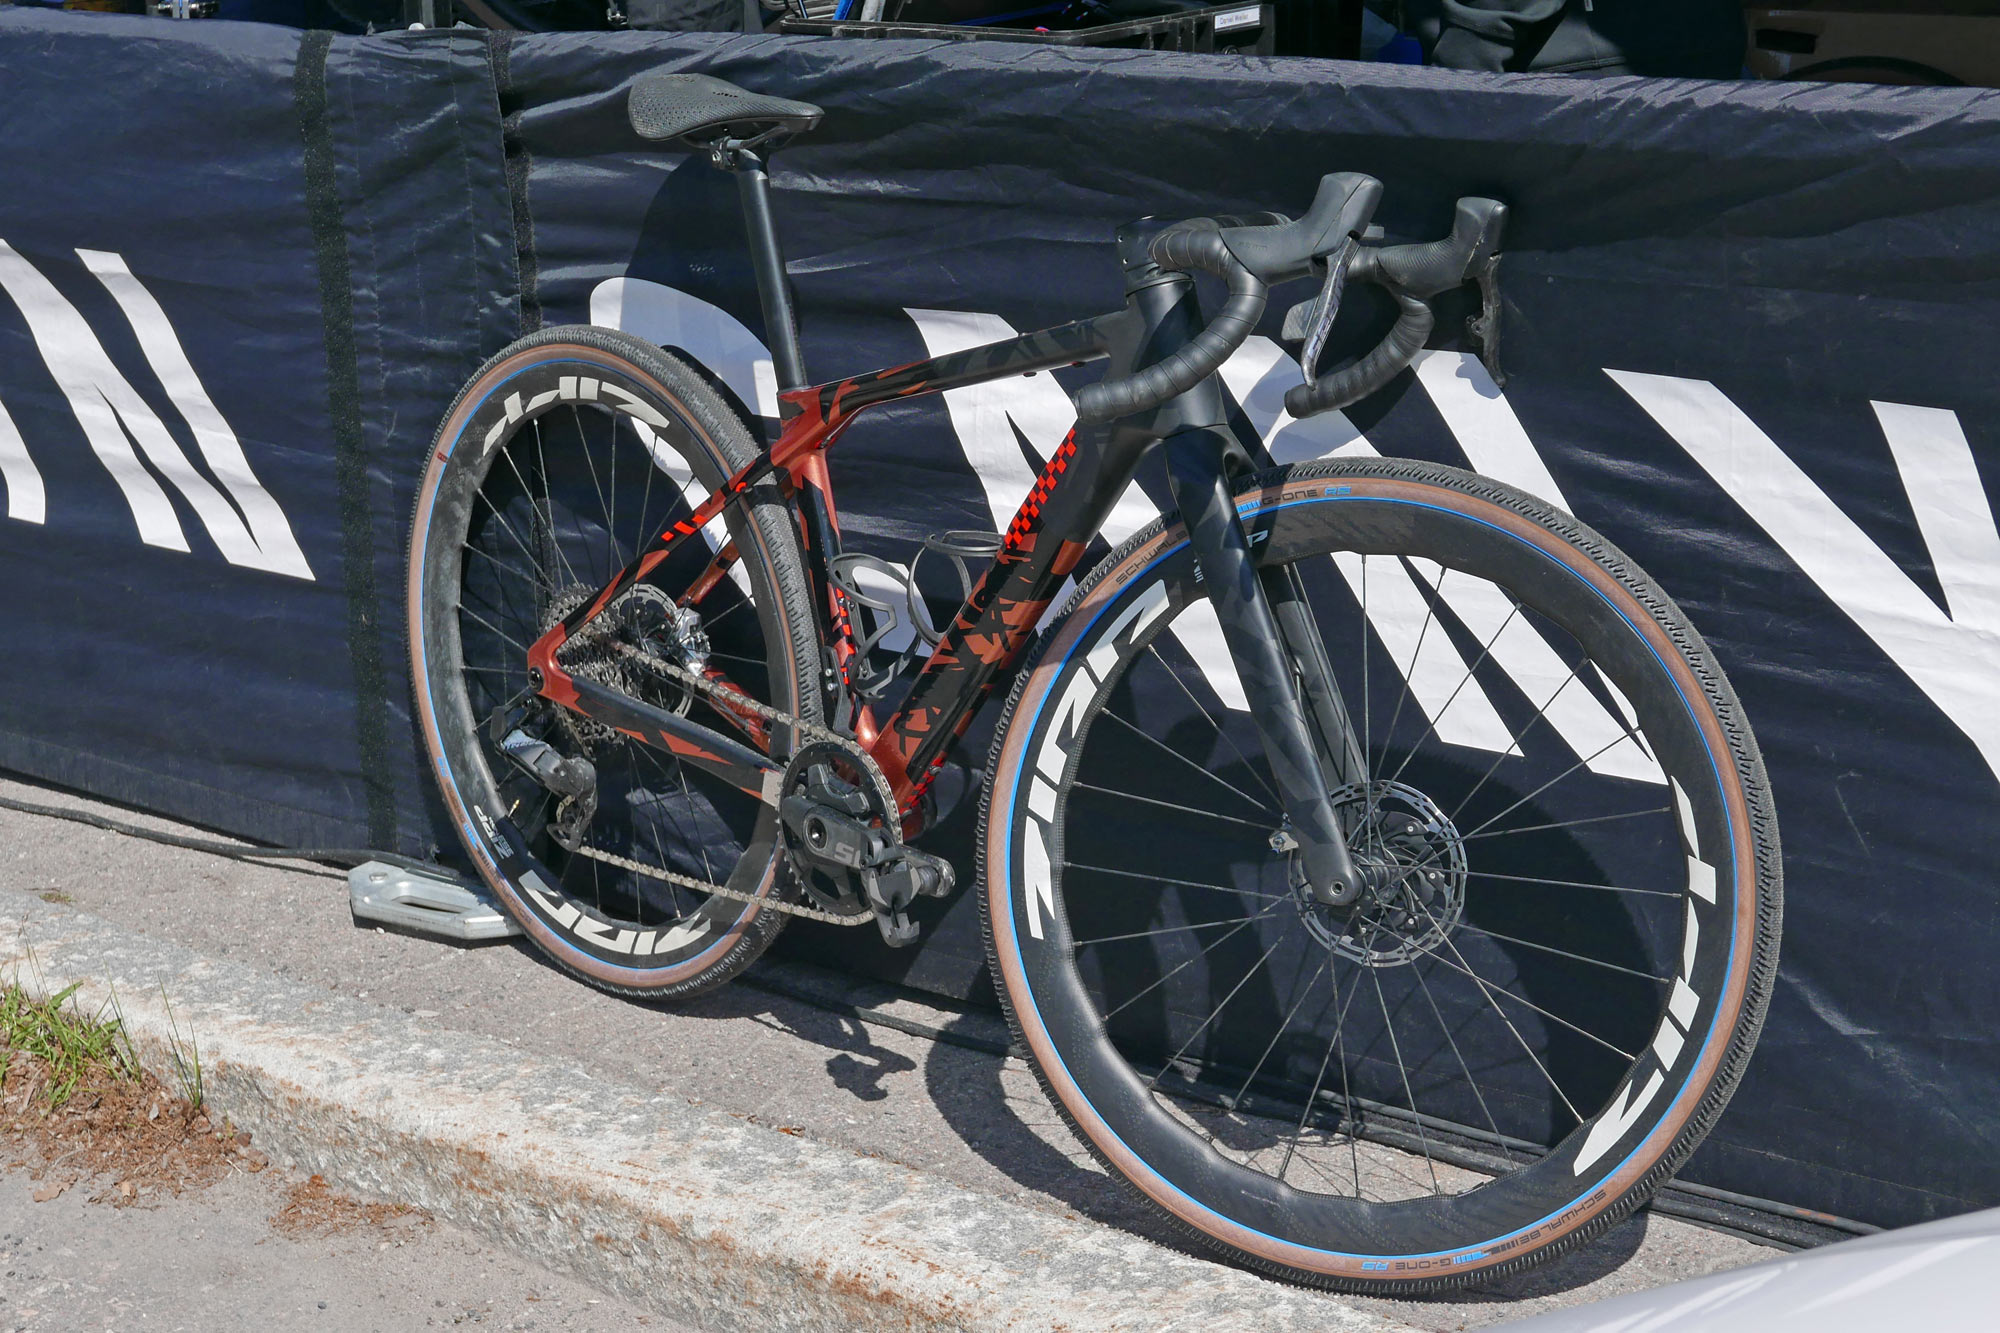 Canyon CFR prototype gravel race bike at FNLD GRVL, angled